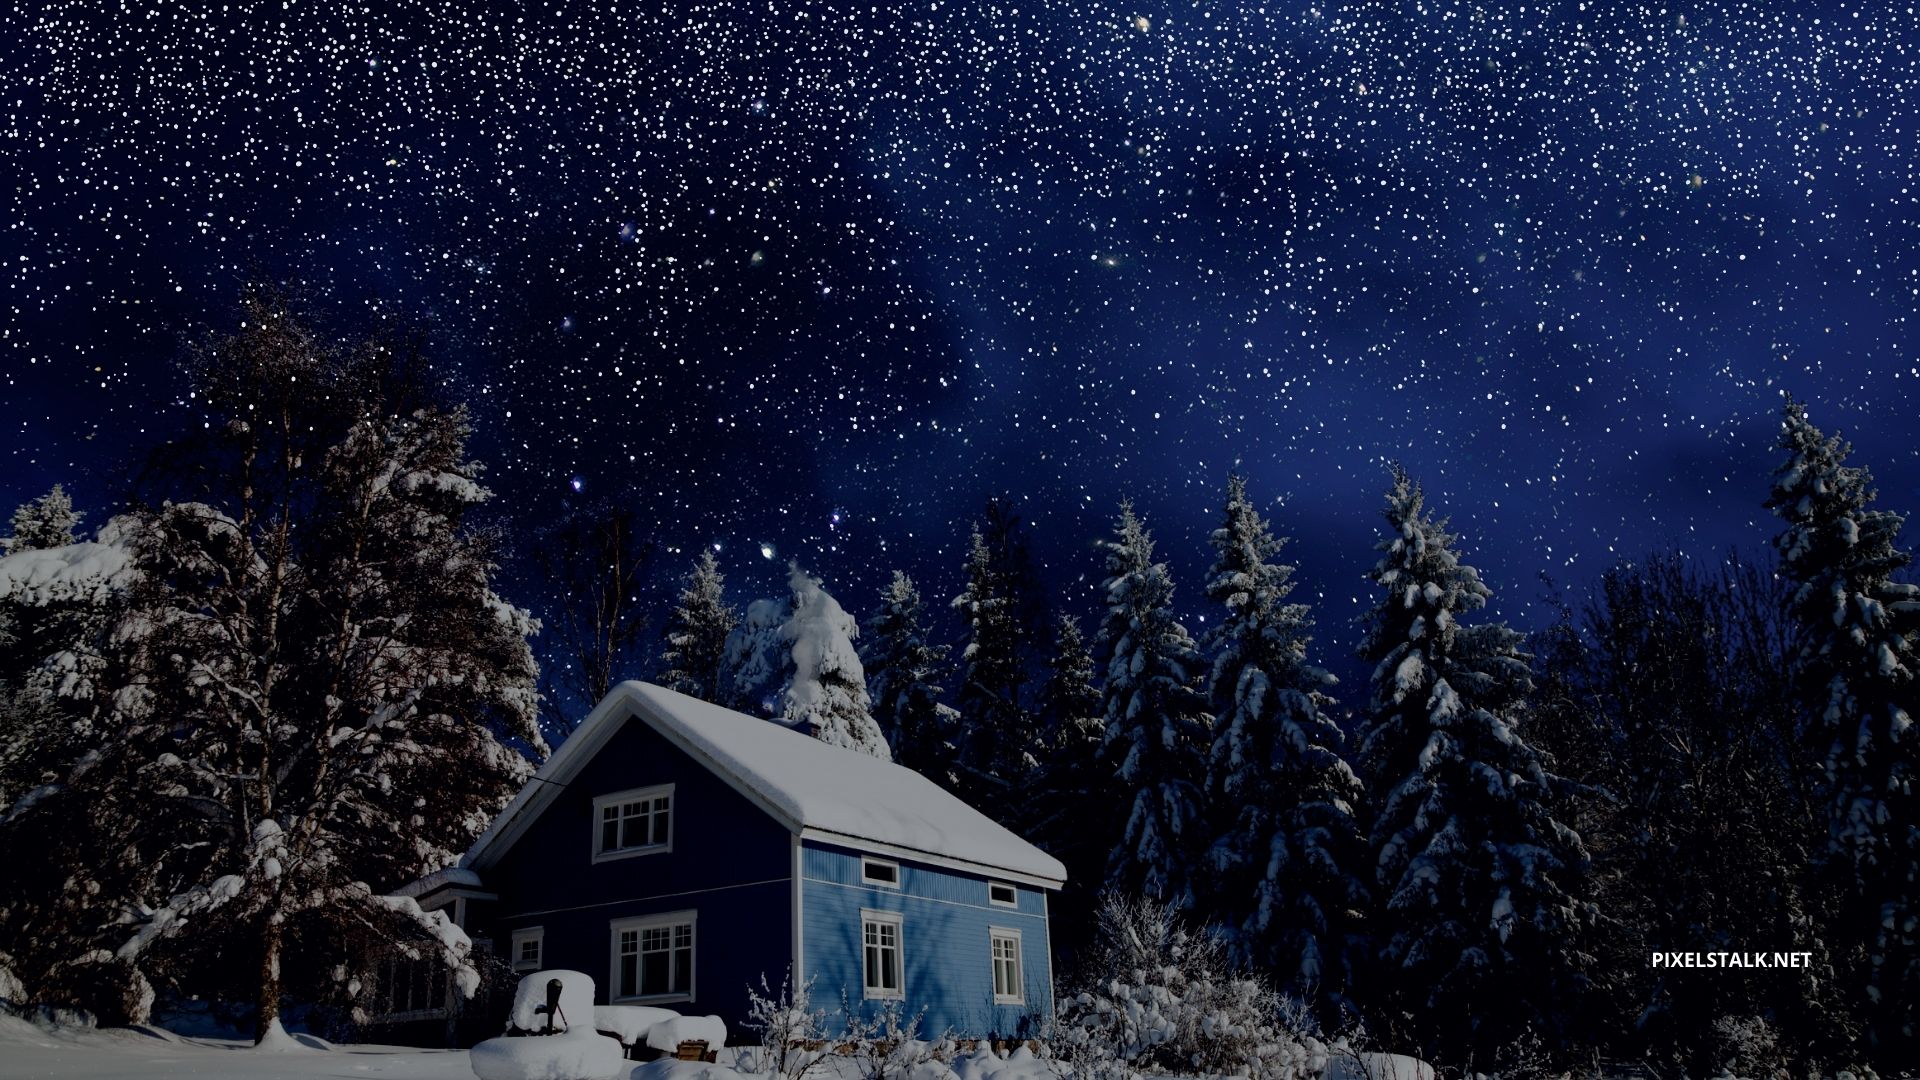 Winter Night Images  Free Download on Freepik